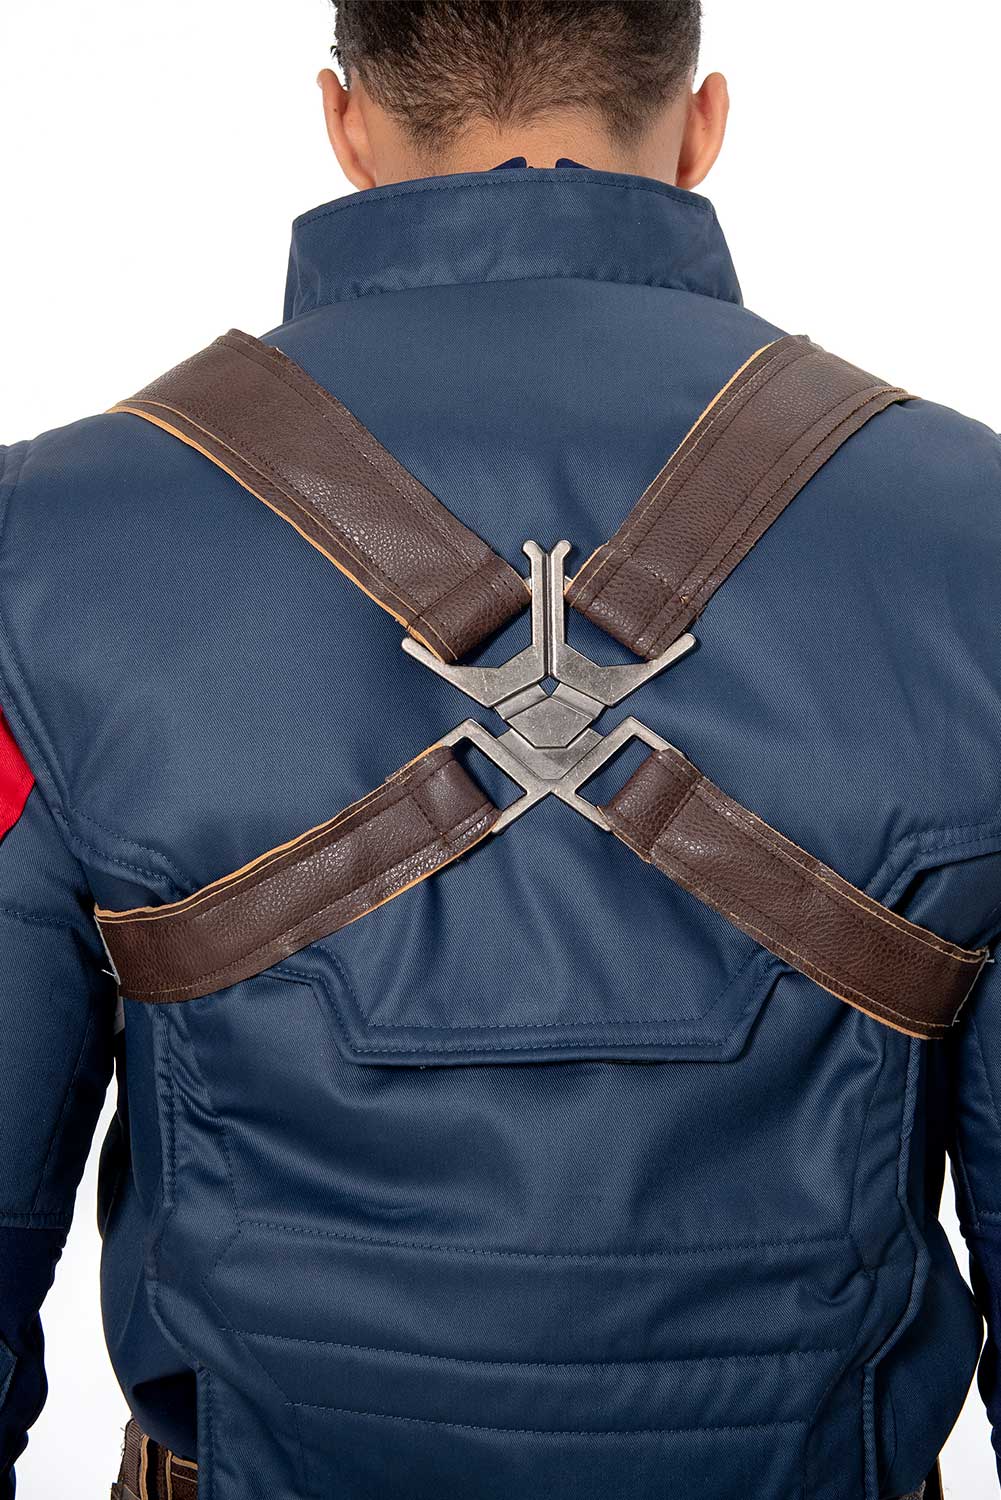 Avengers 4 Endgame Captain America Steve Rogers Cosplay Costume